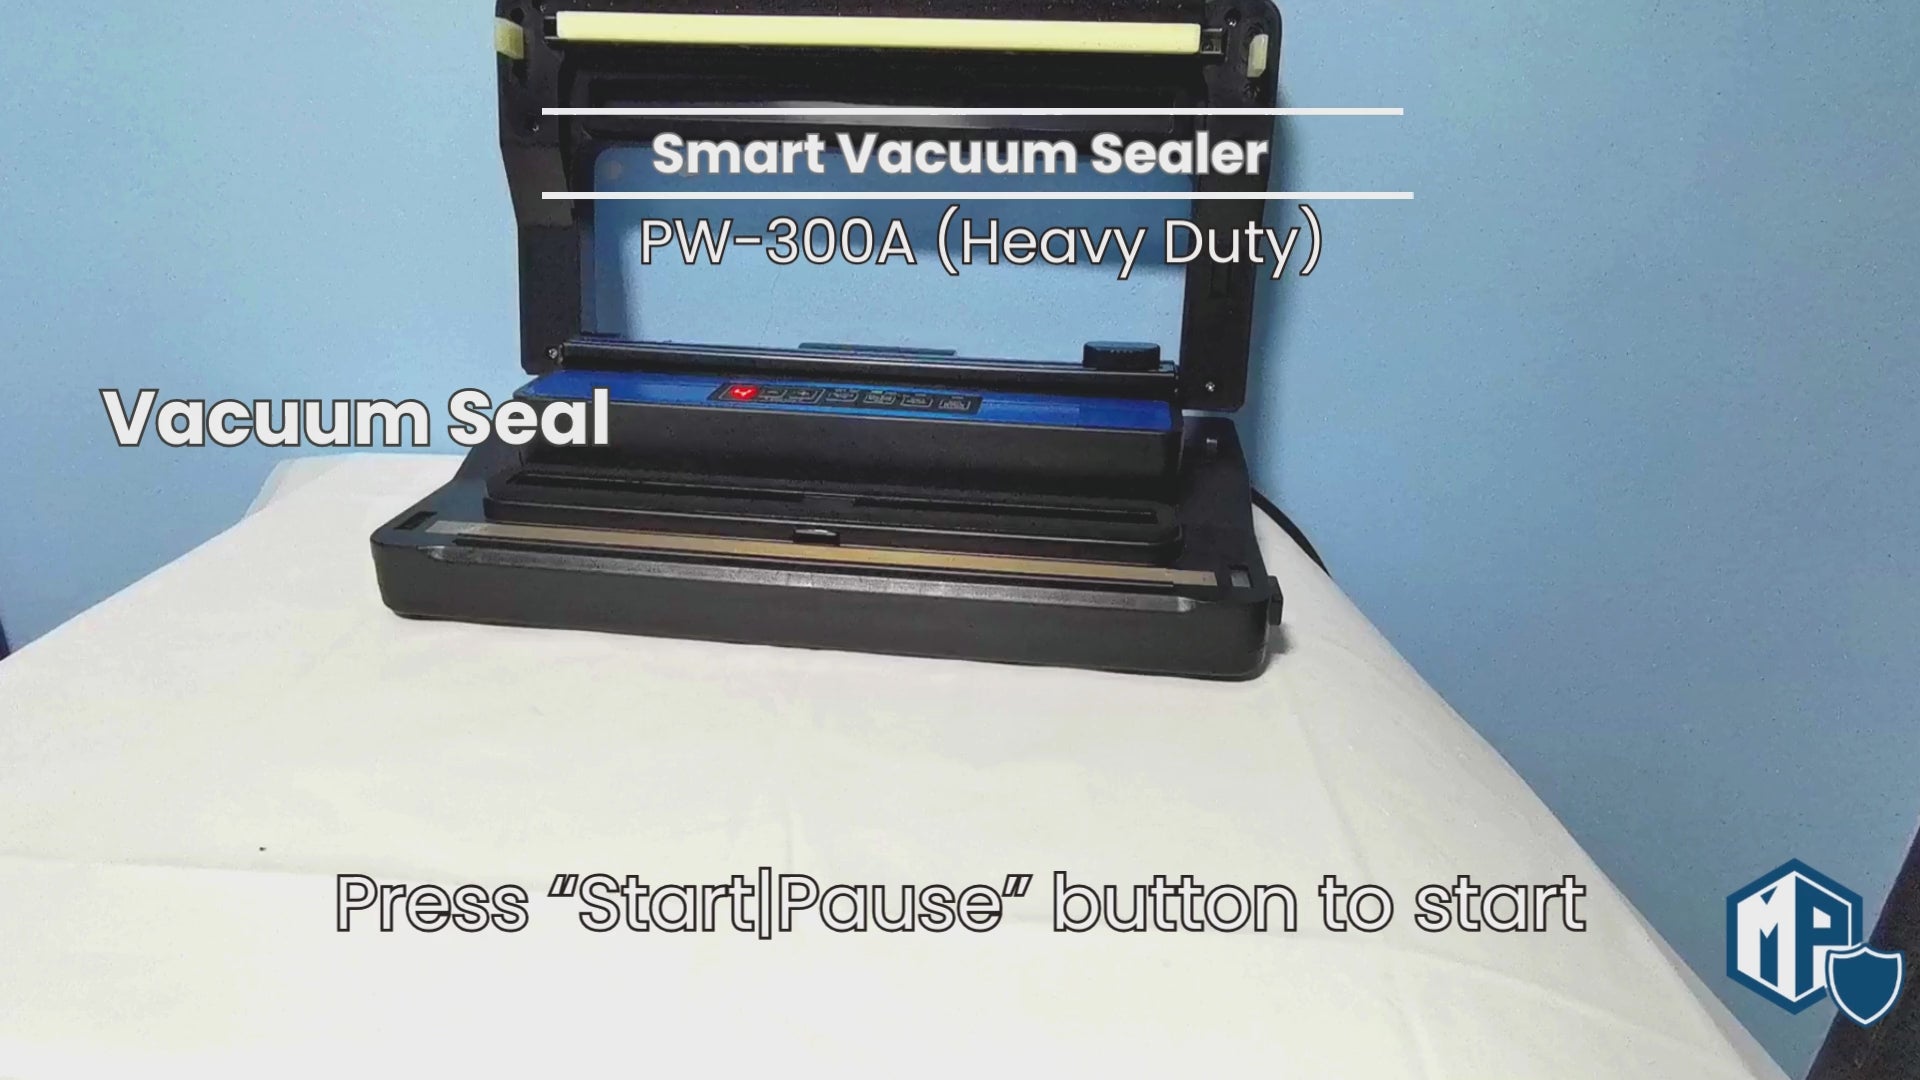 Smart Vacuum Sealer | QH-23 | PW-300A